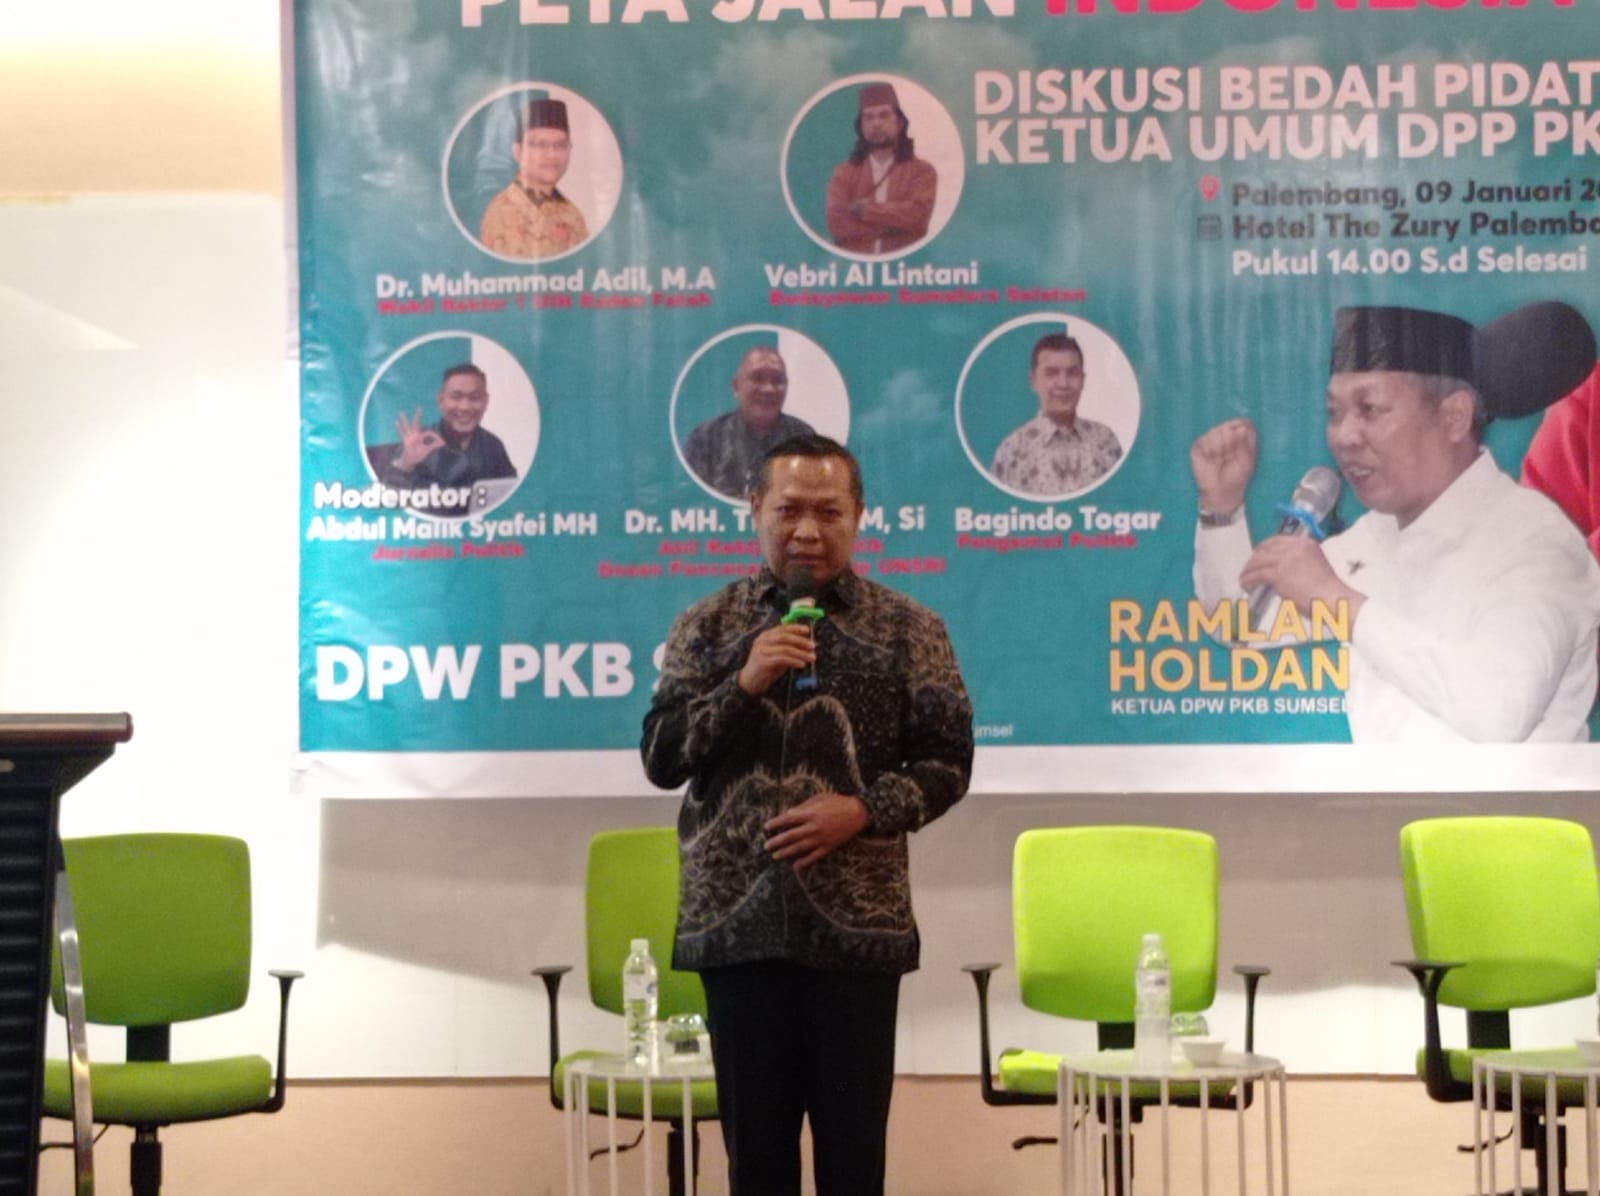 PKB Sumsel Bedah Pidato "Peta Jalan Indonesia Maju" untuk Indonesia Emas 2045